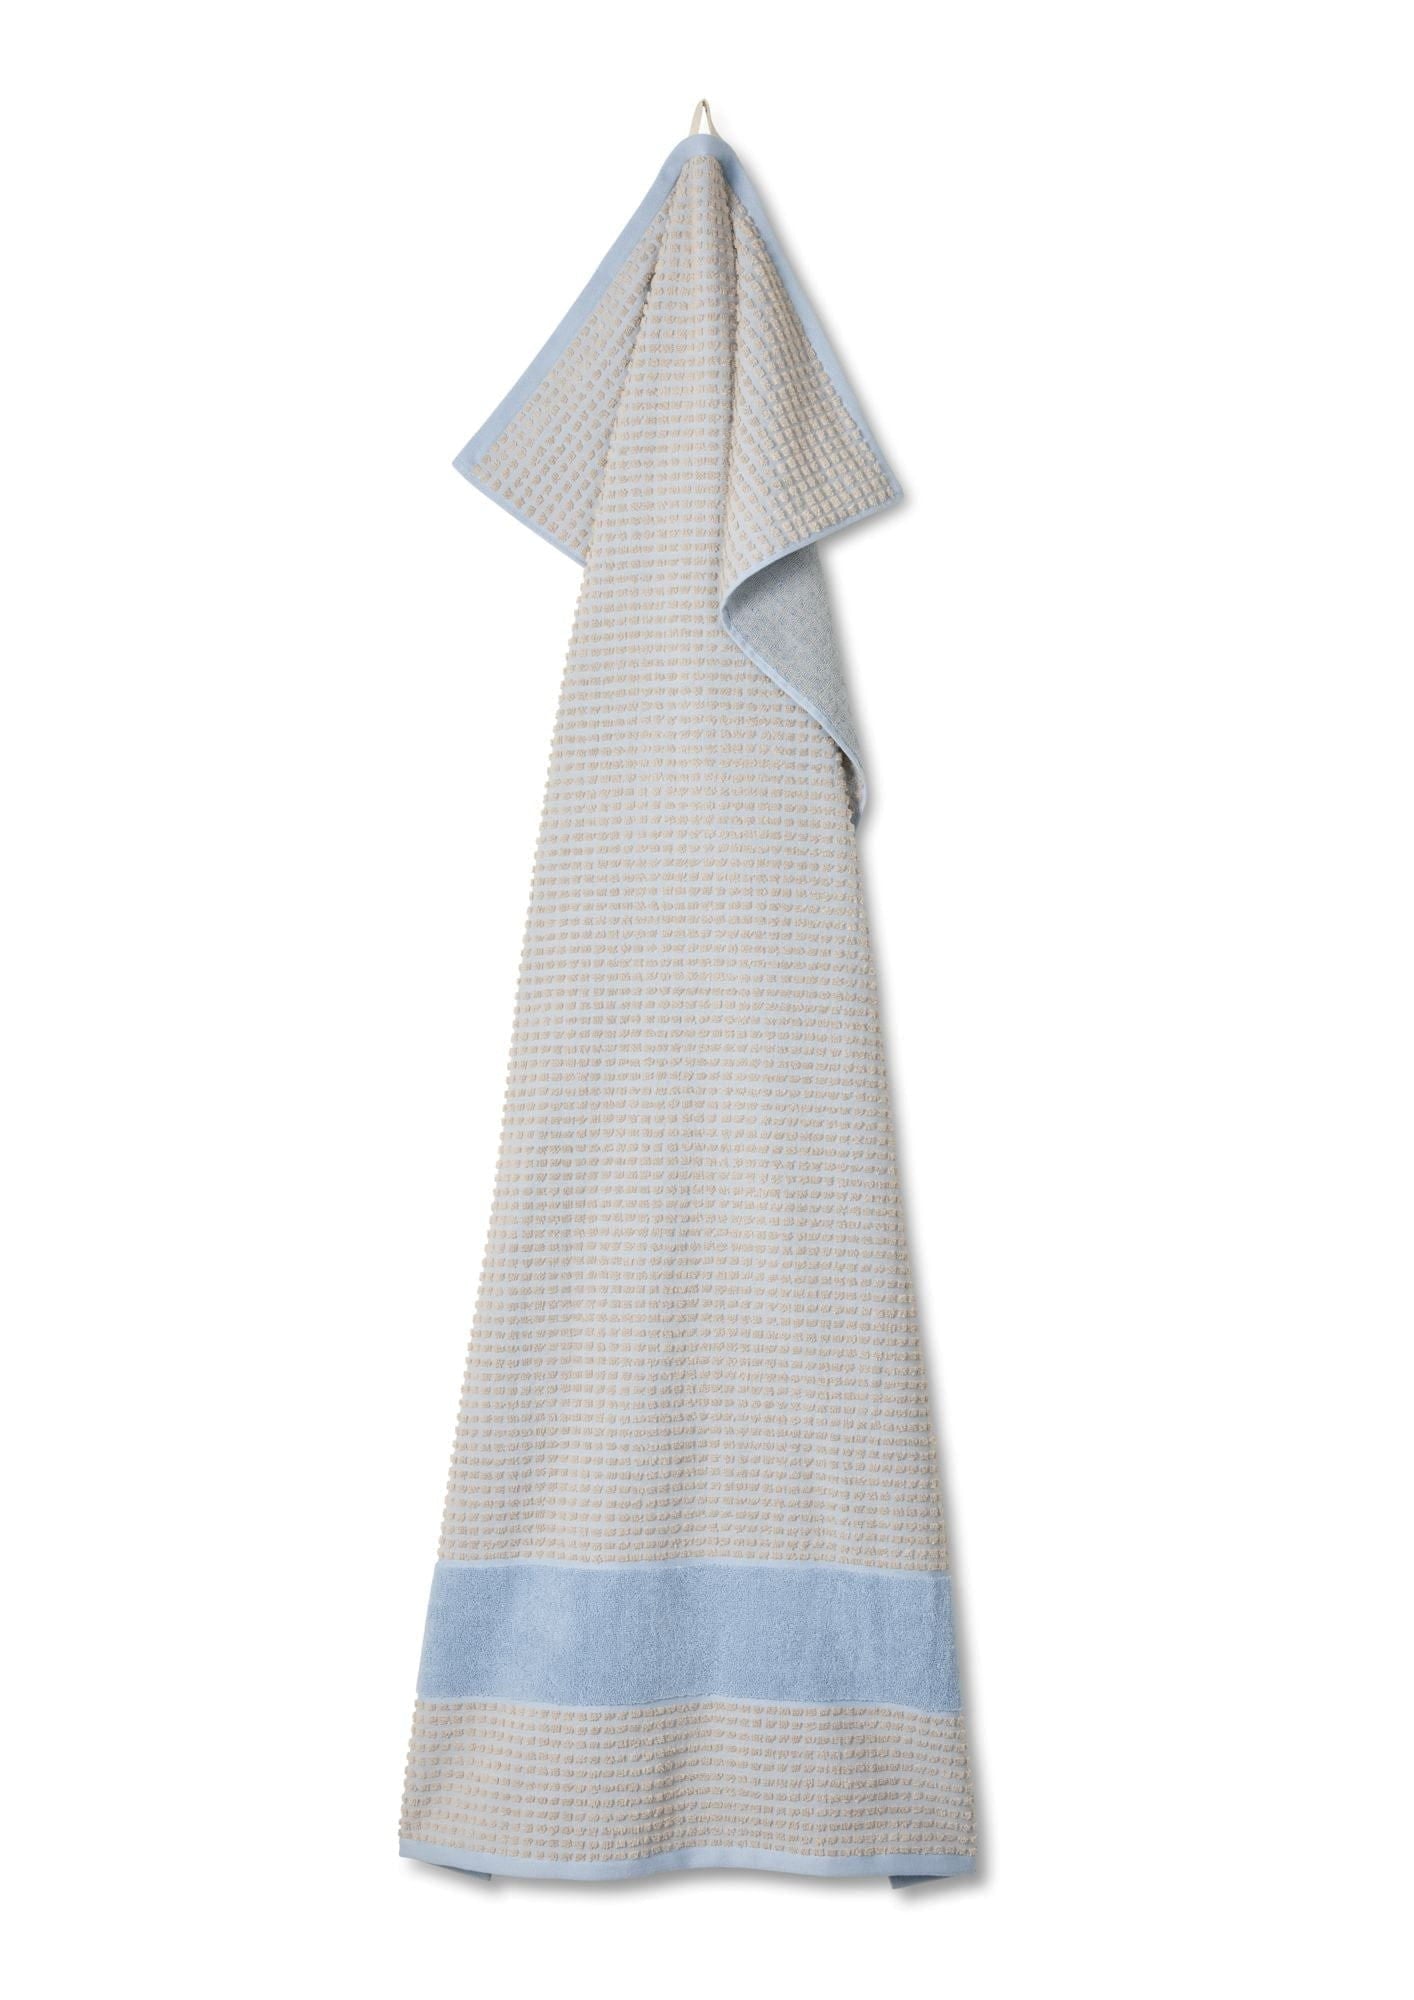 JUNA Vérifiez la serviette 70x140 cm, bleu clair / sable